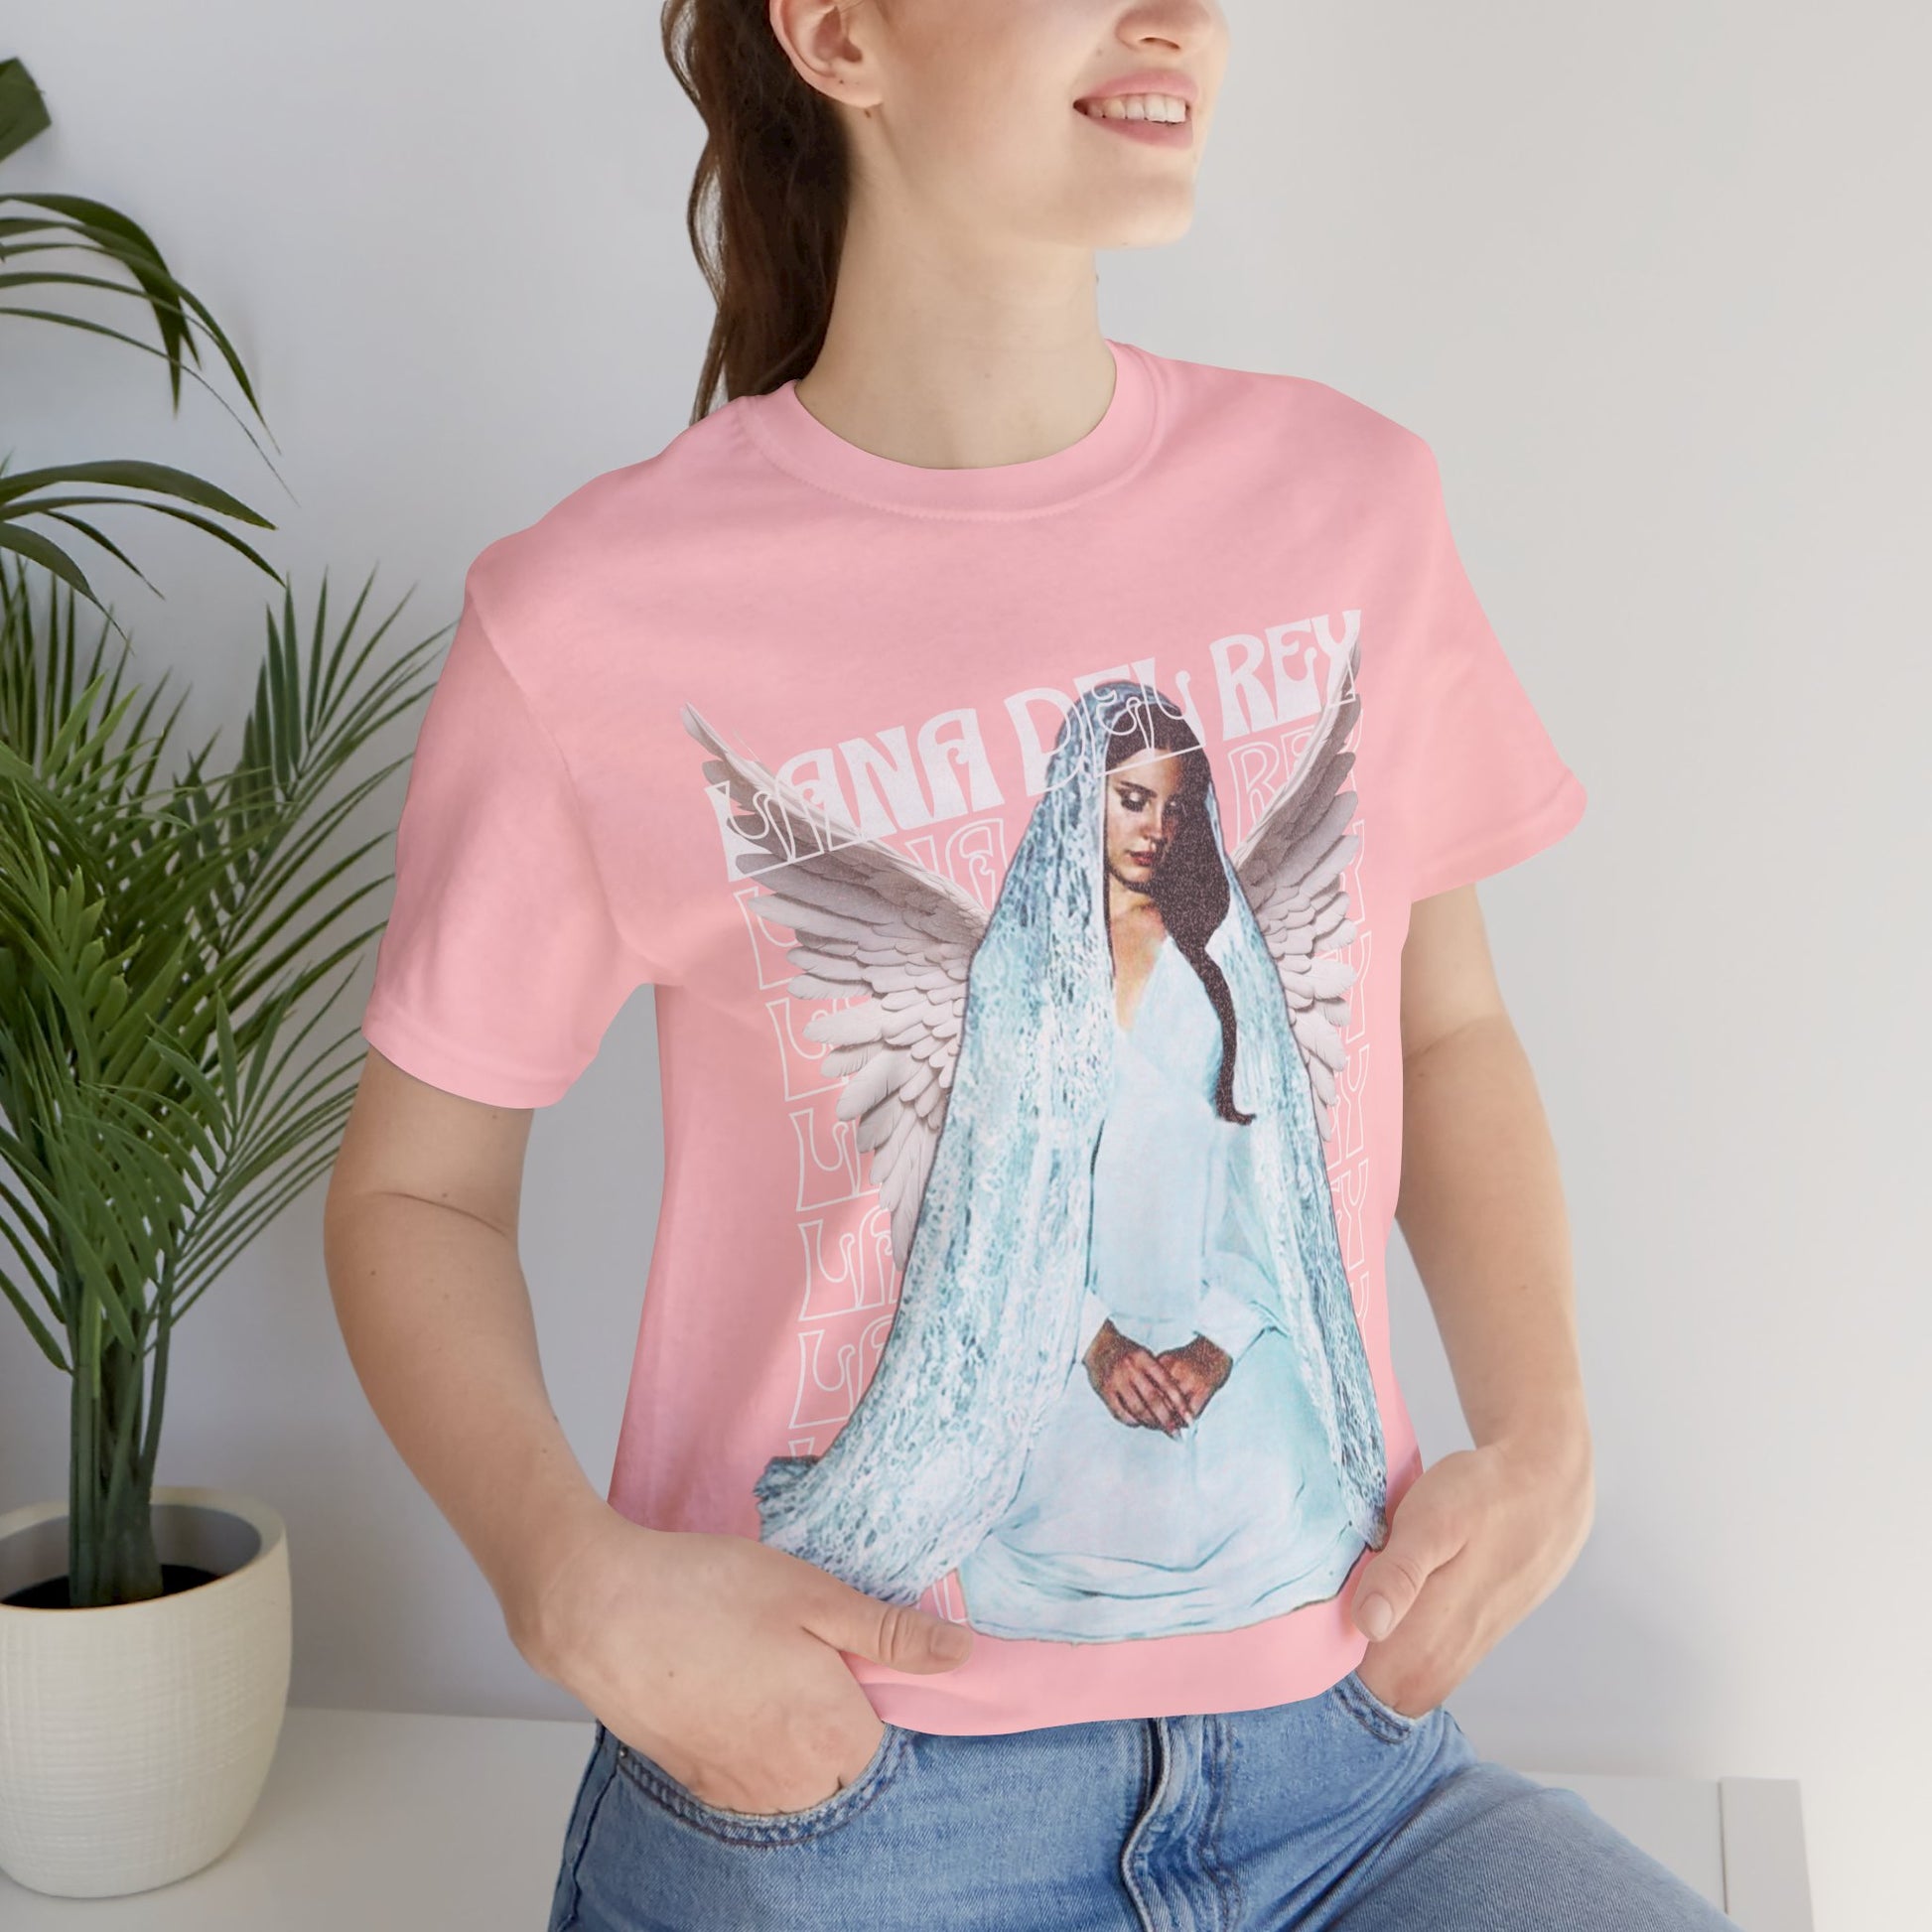 Lana Del Rey T-Shirt Pink